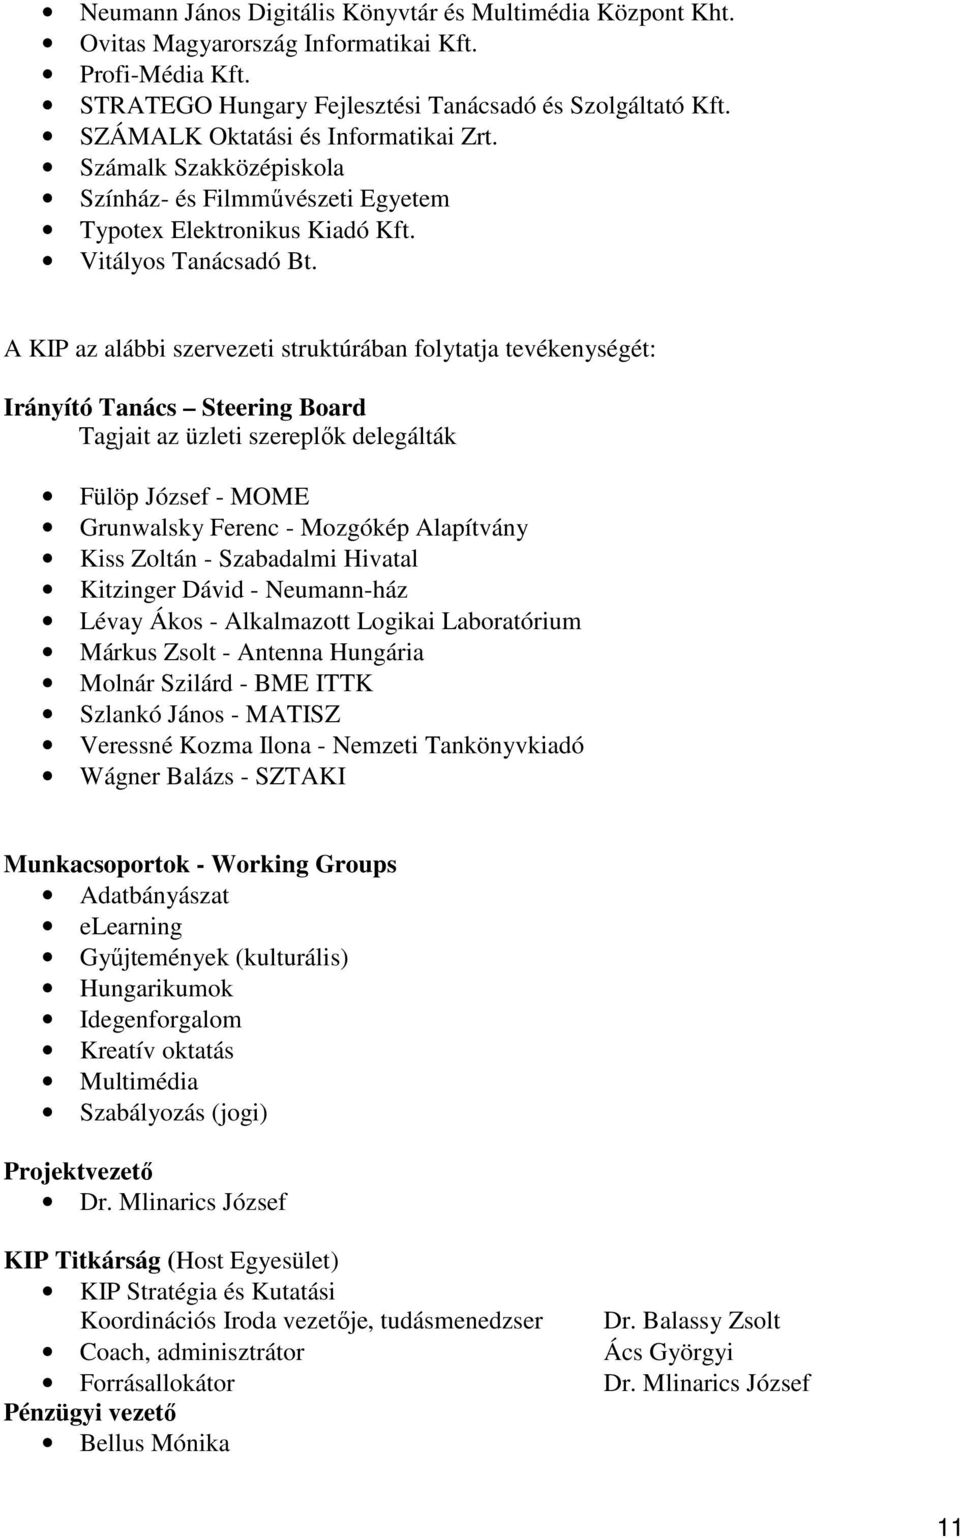 A KIP az alábbi szervezeti struktúrában folytatja tevékenységét: Irányító Tanács Steering Board Tagjait az üzleti szereplők delegálták Fülöp József - MOME Grunwalsky Ferenc - Mozgókép Alapítvány Kiss